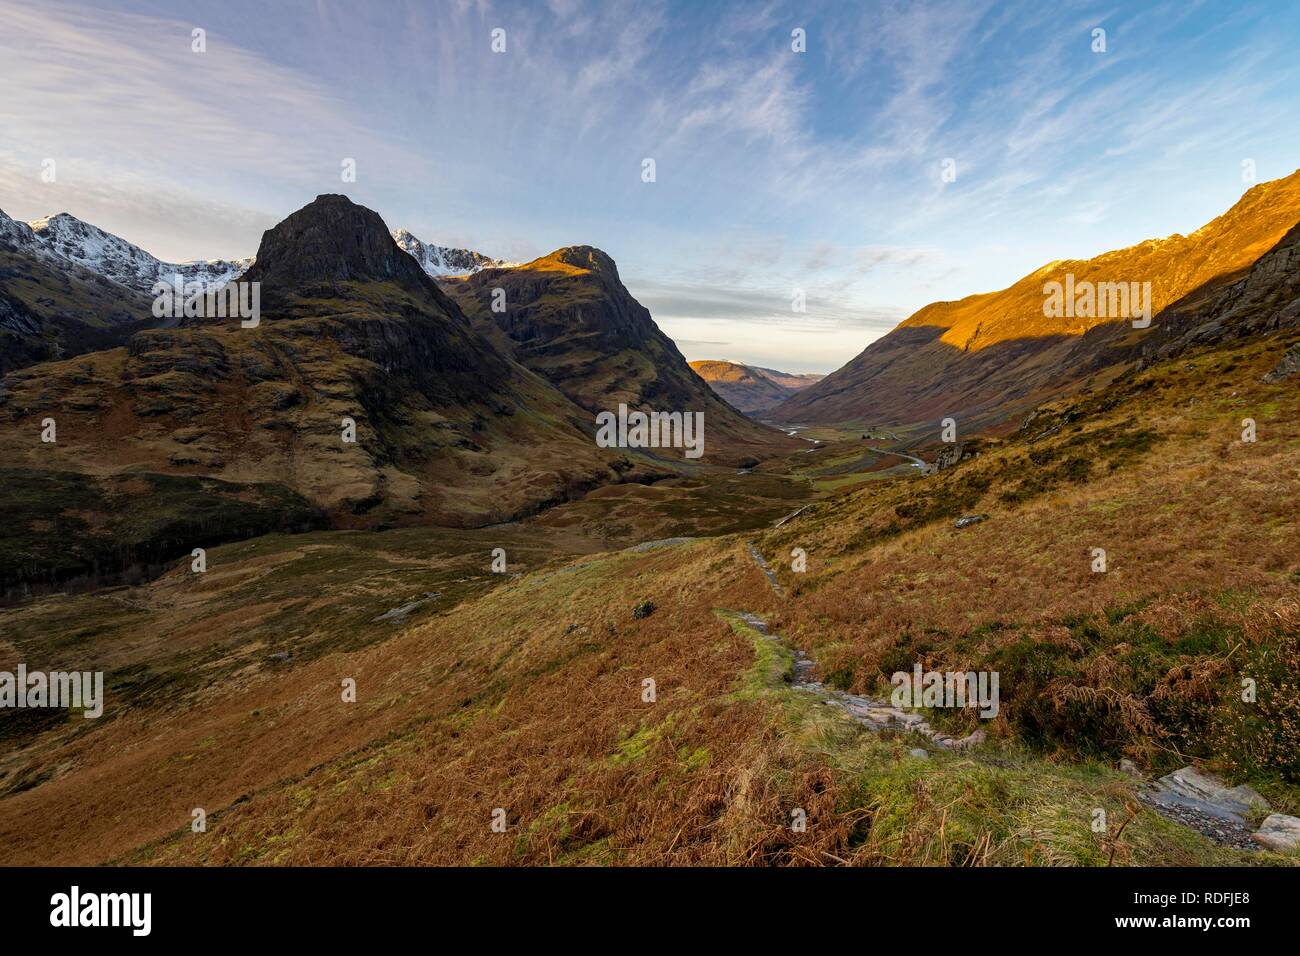 Sentier de randonnée dans des paysages de montagne avec des sommets de Stob Coire nan Lochan, Glen Coe, West Highlands, Ecosse, Royaume-Uni Banque D'Images